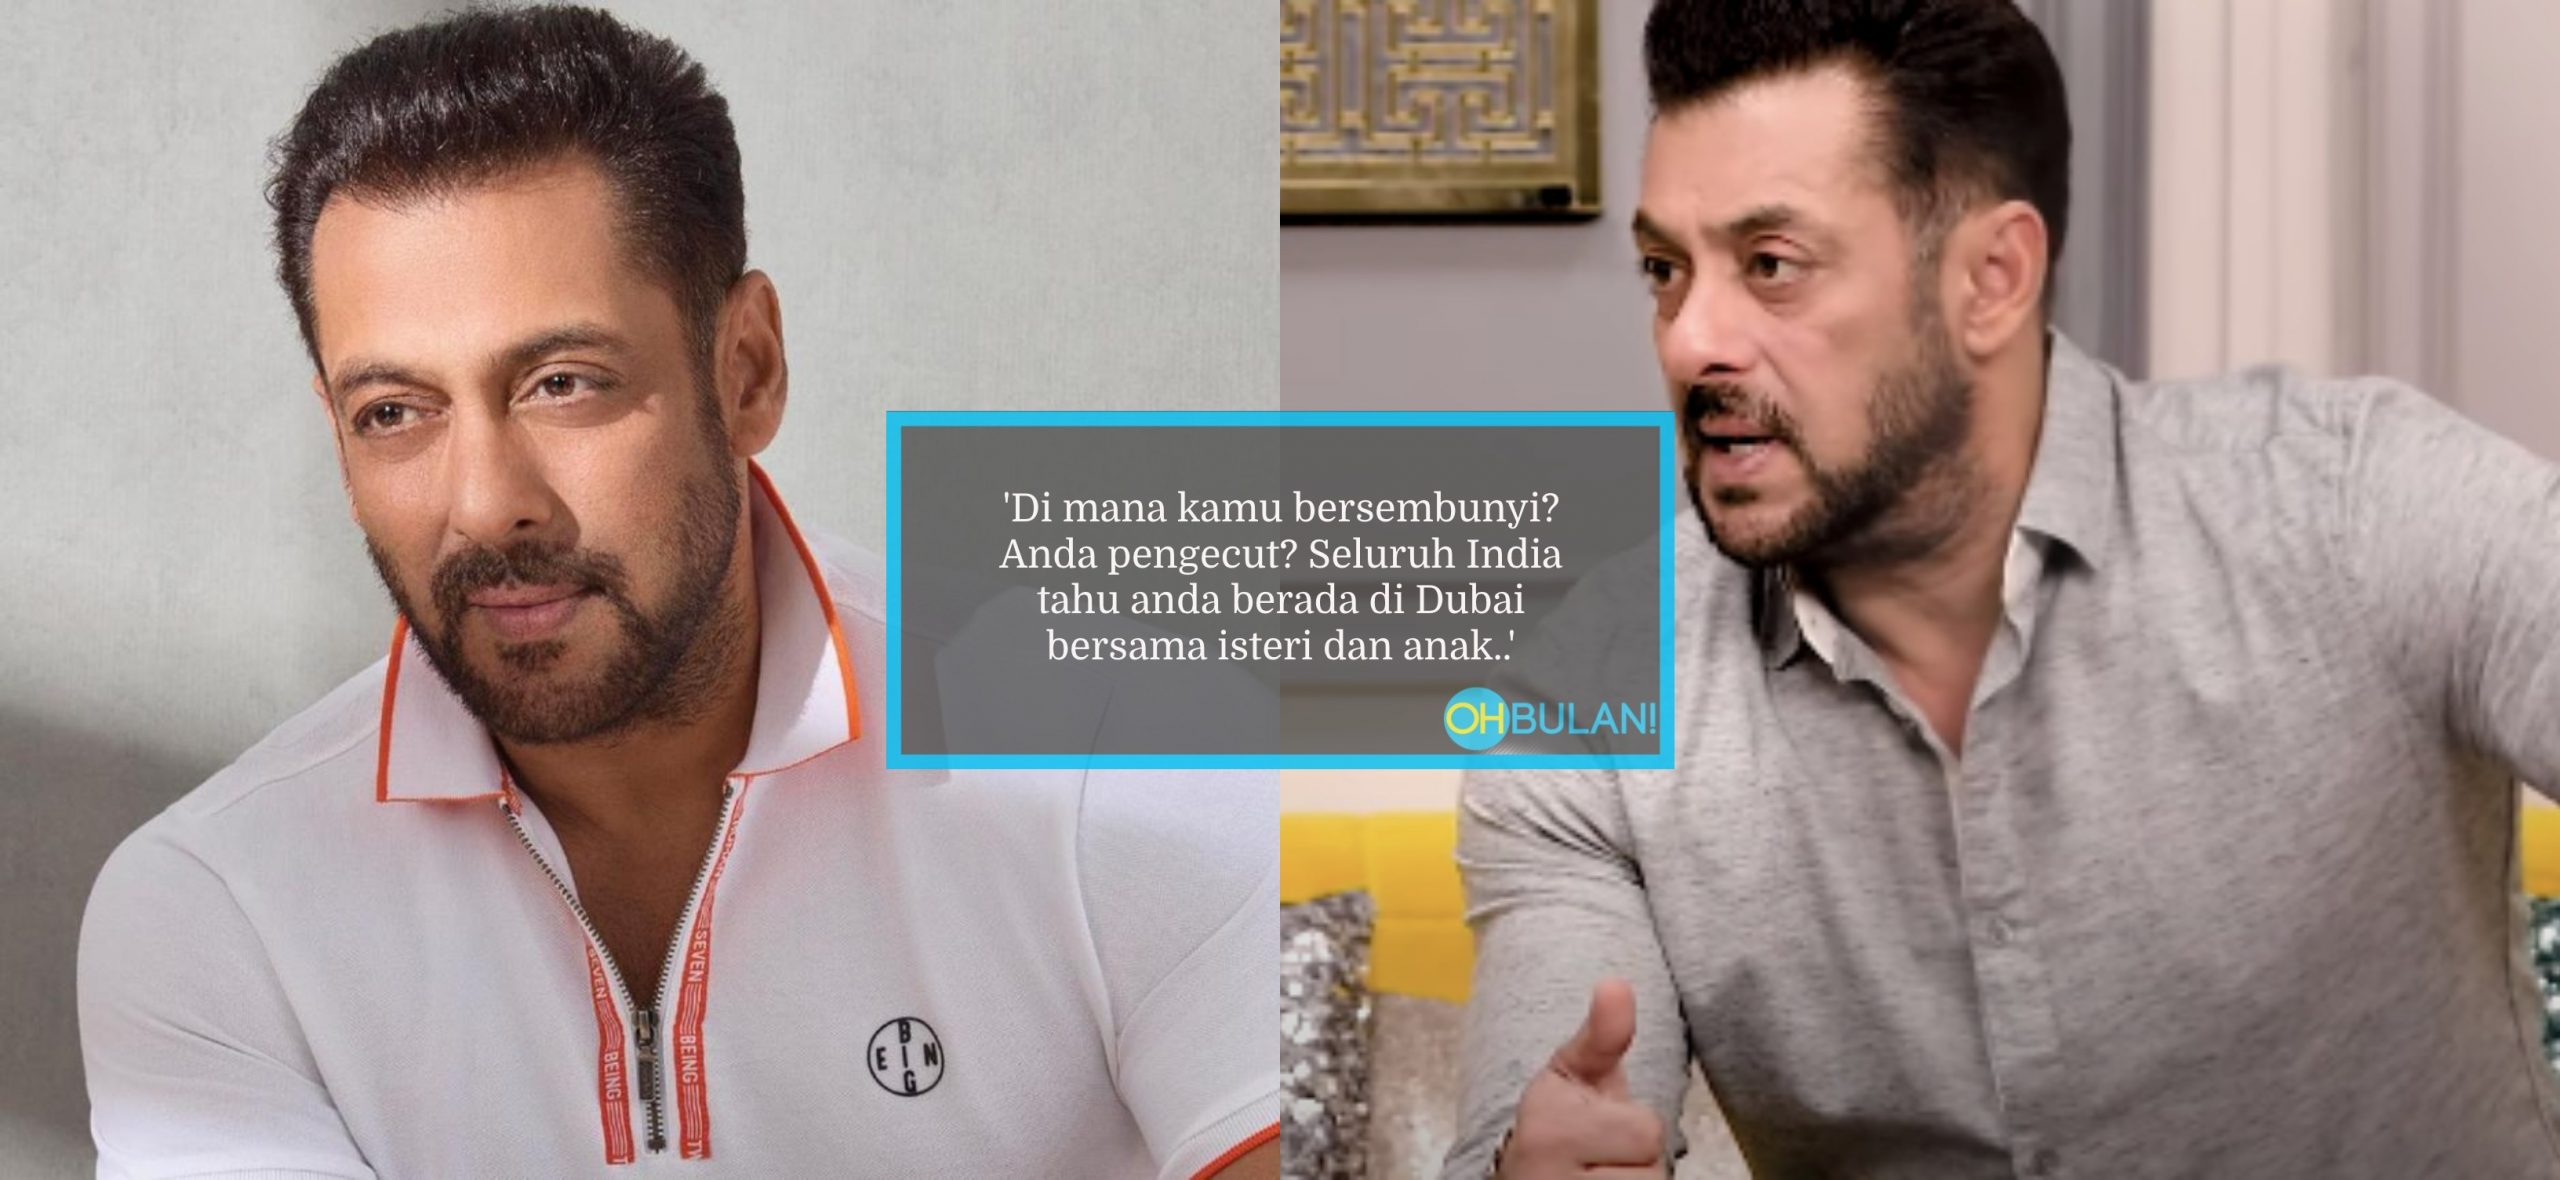 Salman Khan Nafi Rahsiakan Perkahwinan & Sorok Anak Di Dubai